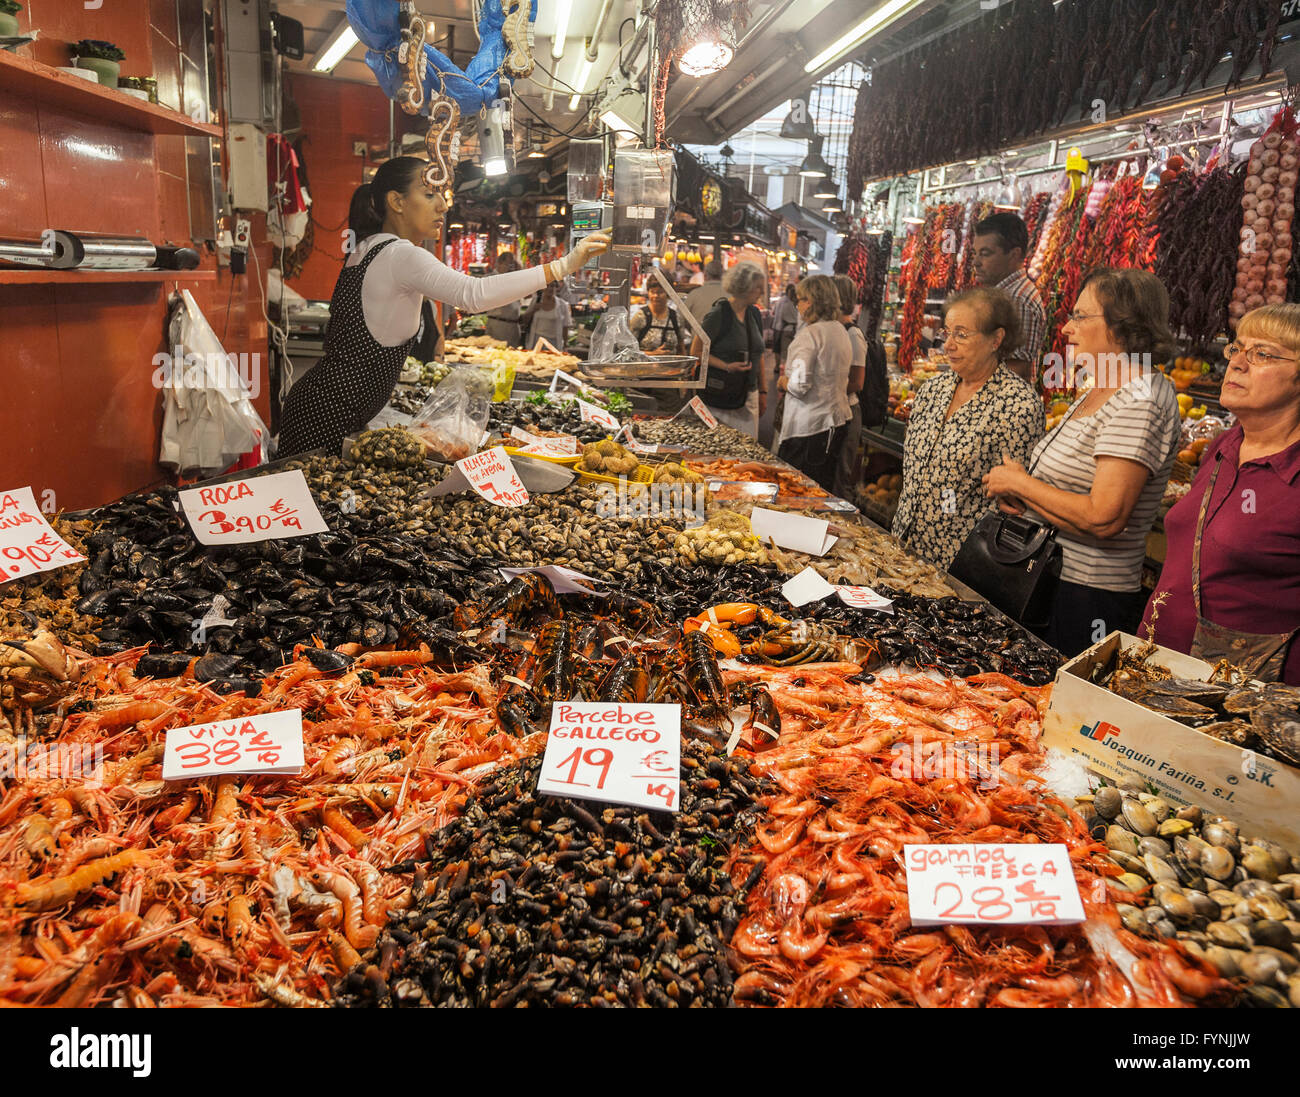 Frutti di mare, pesce, Mercat de Sant Josep situato sulla Rambla, al mercato della Boqueria, Barcellona, Spagna Foto Stock